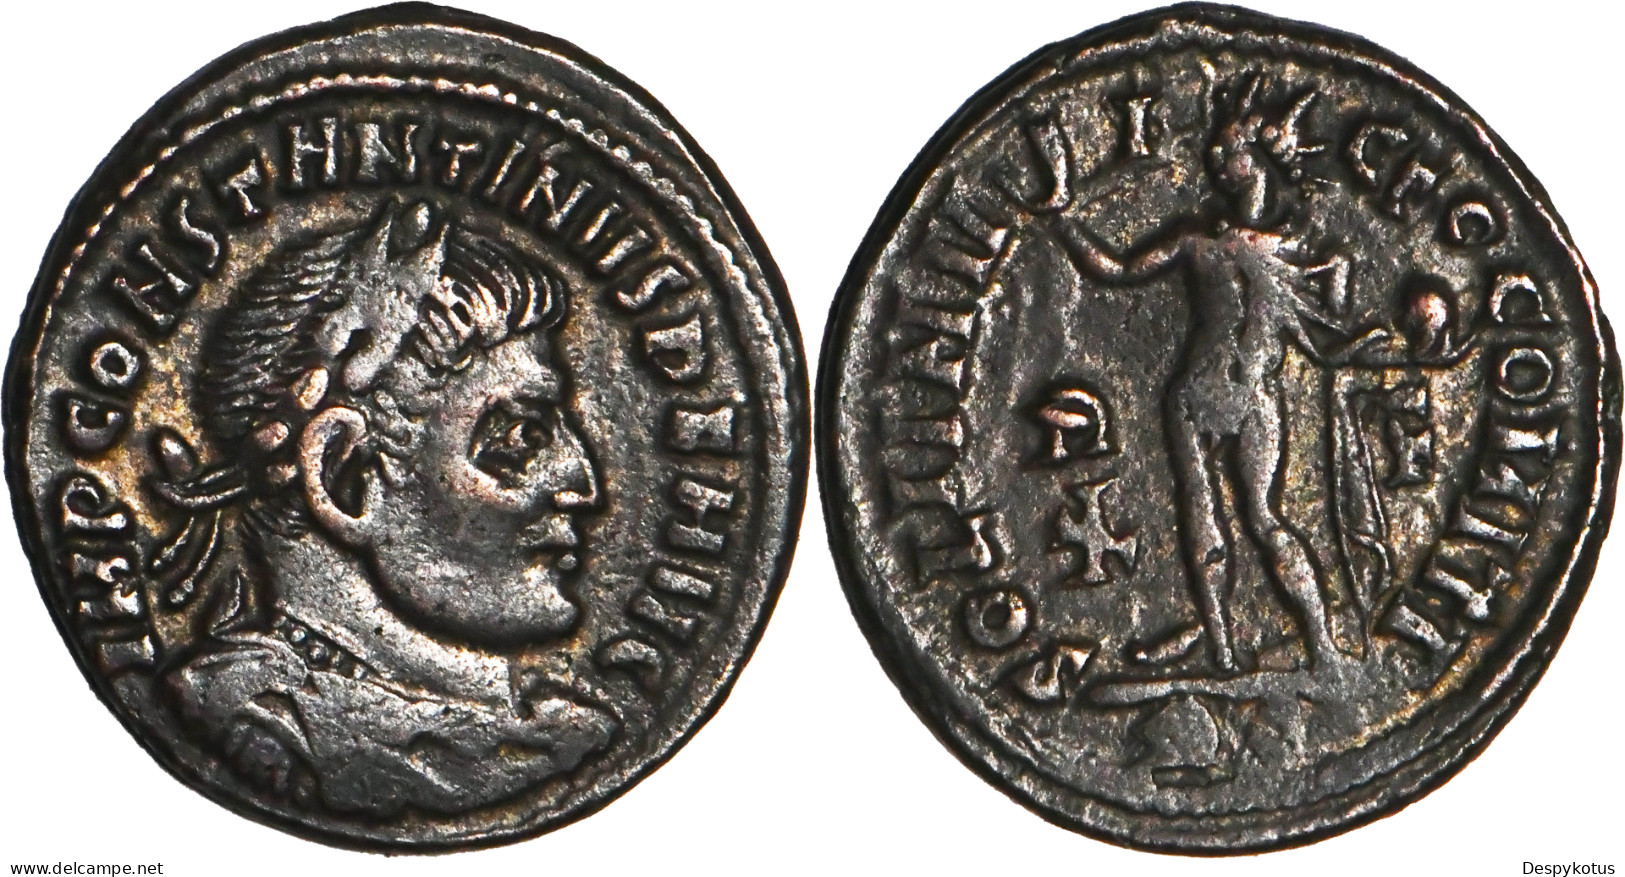 ROME - Centenionalis - CONSTANTIN I - SOLI INVICTO - ROME (RP) - 317 AD - RIC.27 - 19-142 - L'Empire Chrétien (307 à 363)